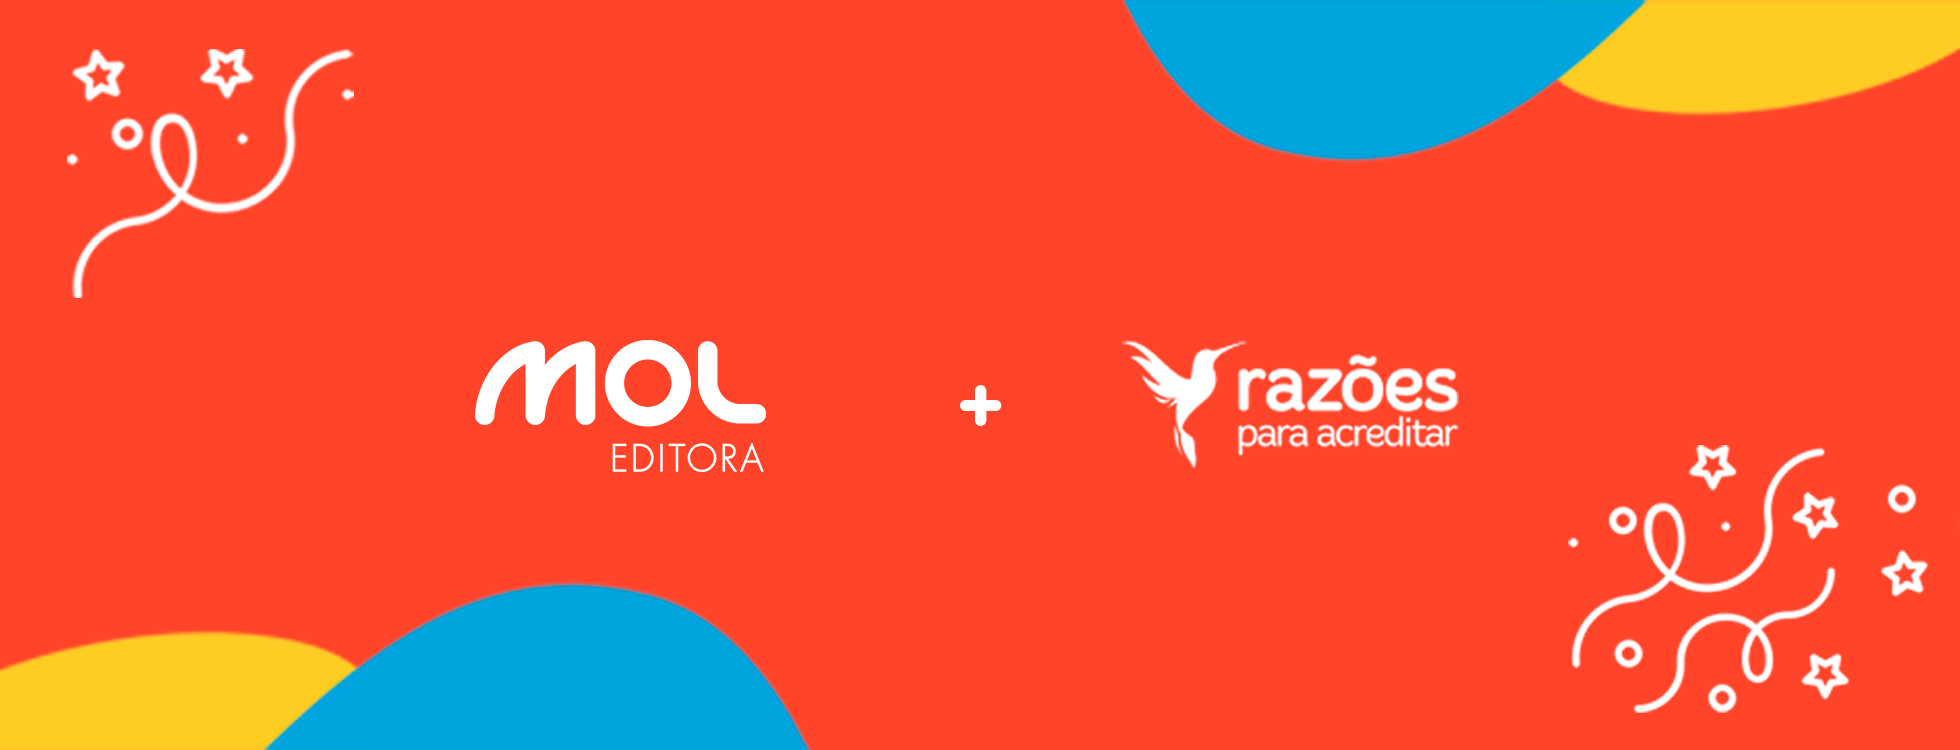 Somamos forças com a maior plataforma de mídia positiva do Brasil para engajar ainda mais marcas e pessoas em projetos de impacto social - e nosso primeiro produto já começa a ser vendido este mês!